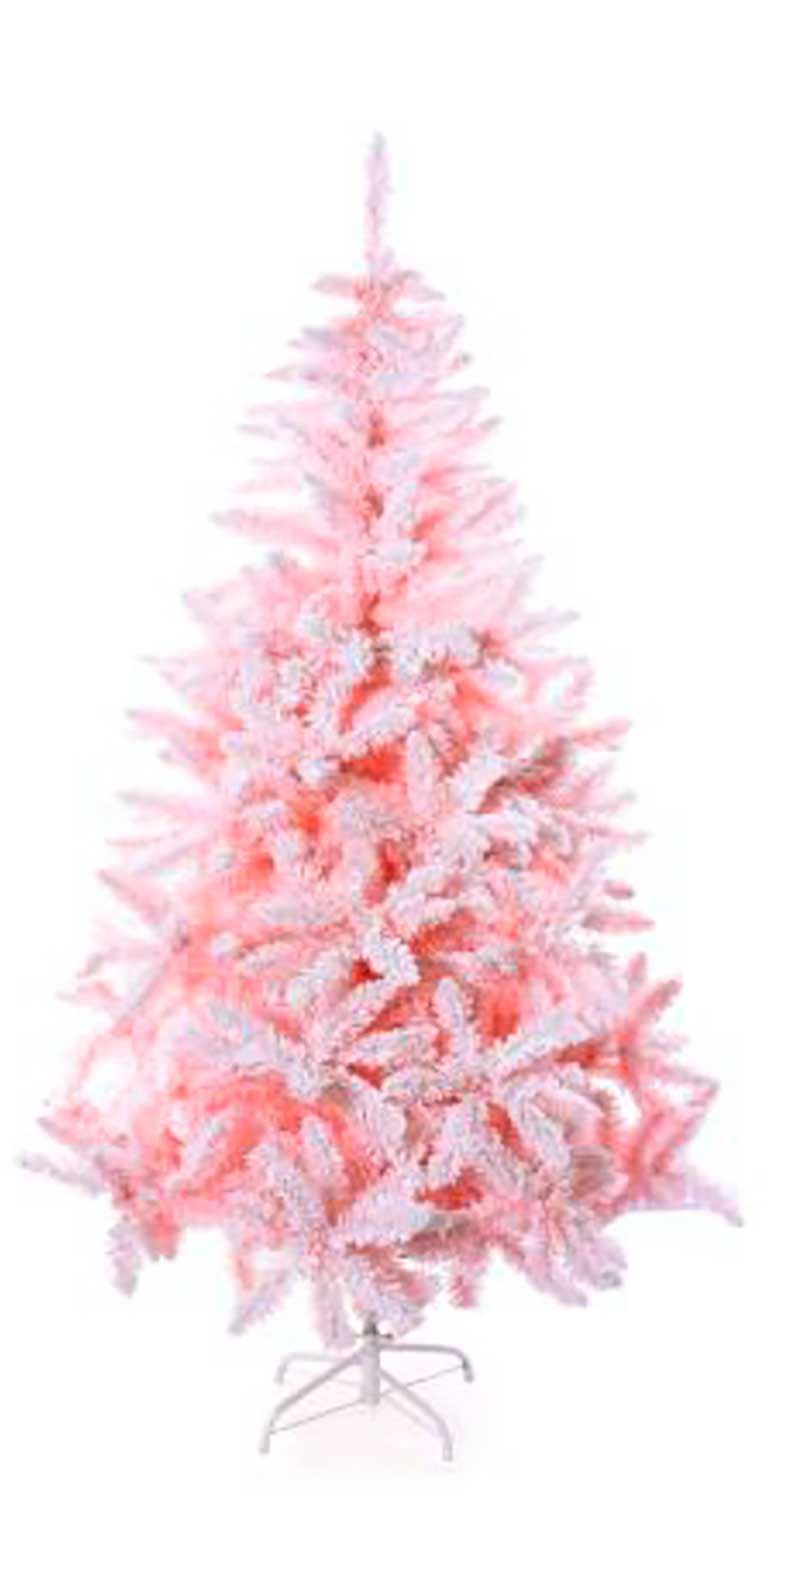 Arvore De Natal Pinheiro Andes Rosa Nevada 150cm 935 Galhos – Cromus  1025840 - Papelaria Criativa